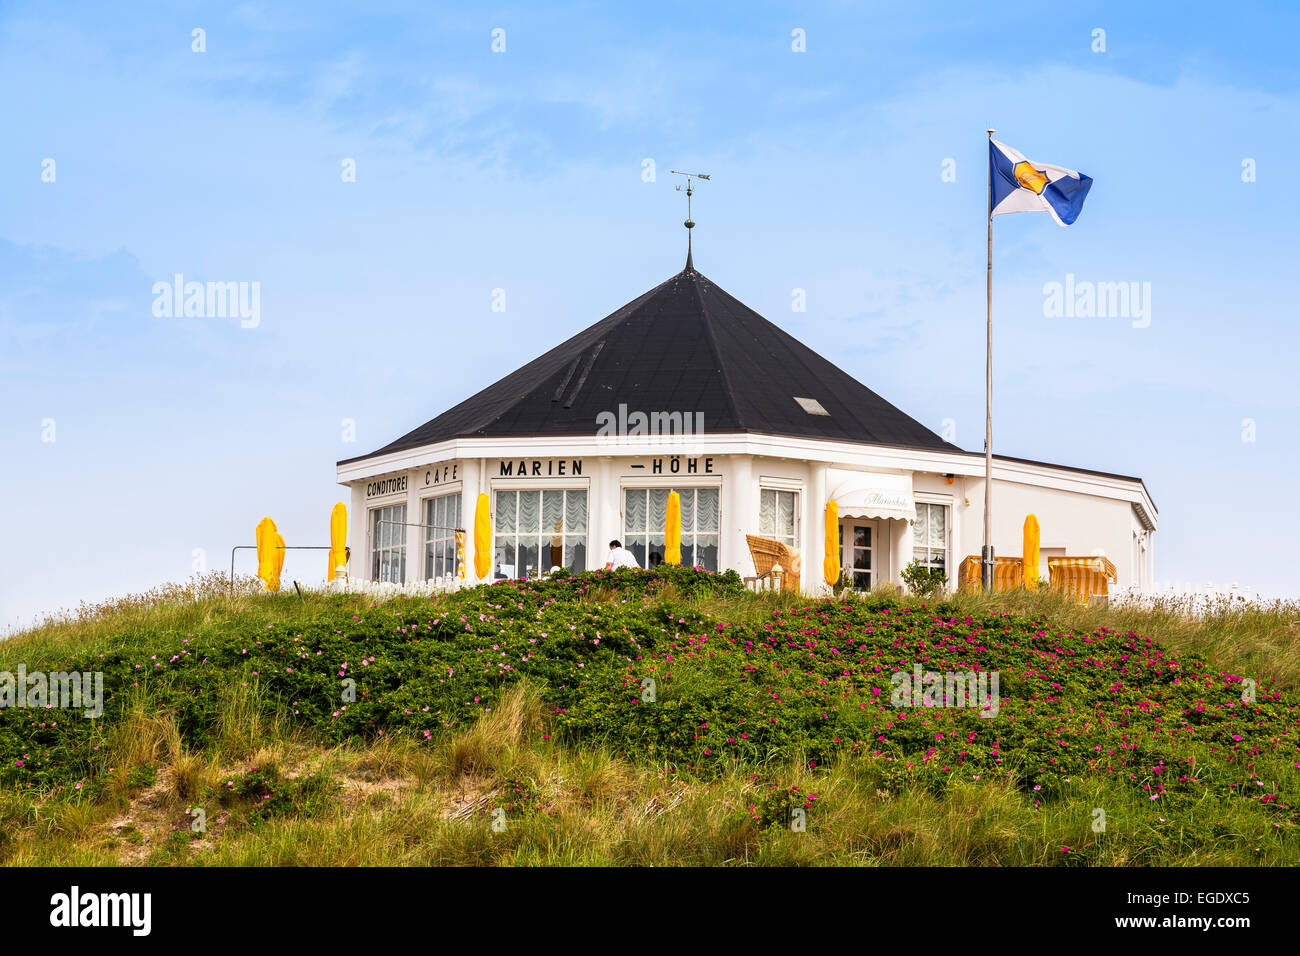 Cafe Marienhoehe, Norderney Isola, Nationalpark, Mare del Nord est delle Isole Frisone, Frisia orientale, Bassa Sassonia, Germania, Europa Foto Stock